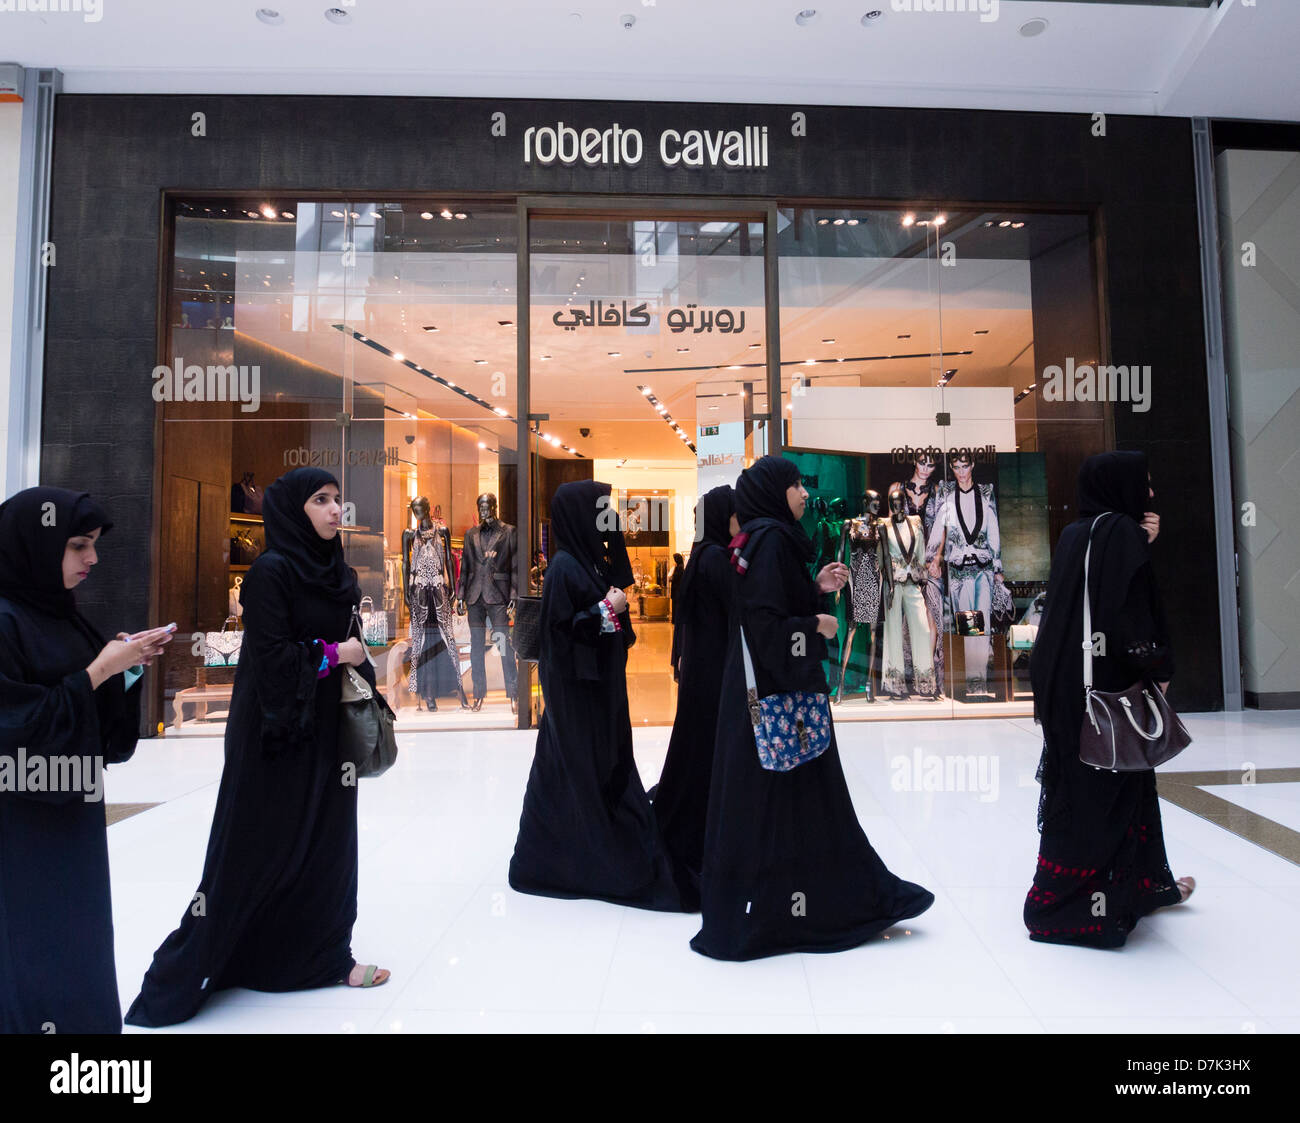 Roberto Cavalli-Boutique und Shopping in der Dubai Mall in Dubai Vereinigte Arabische Emirate Stockfoto